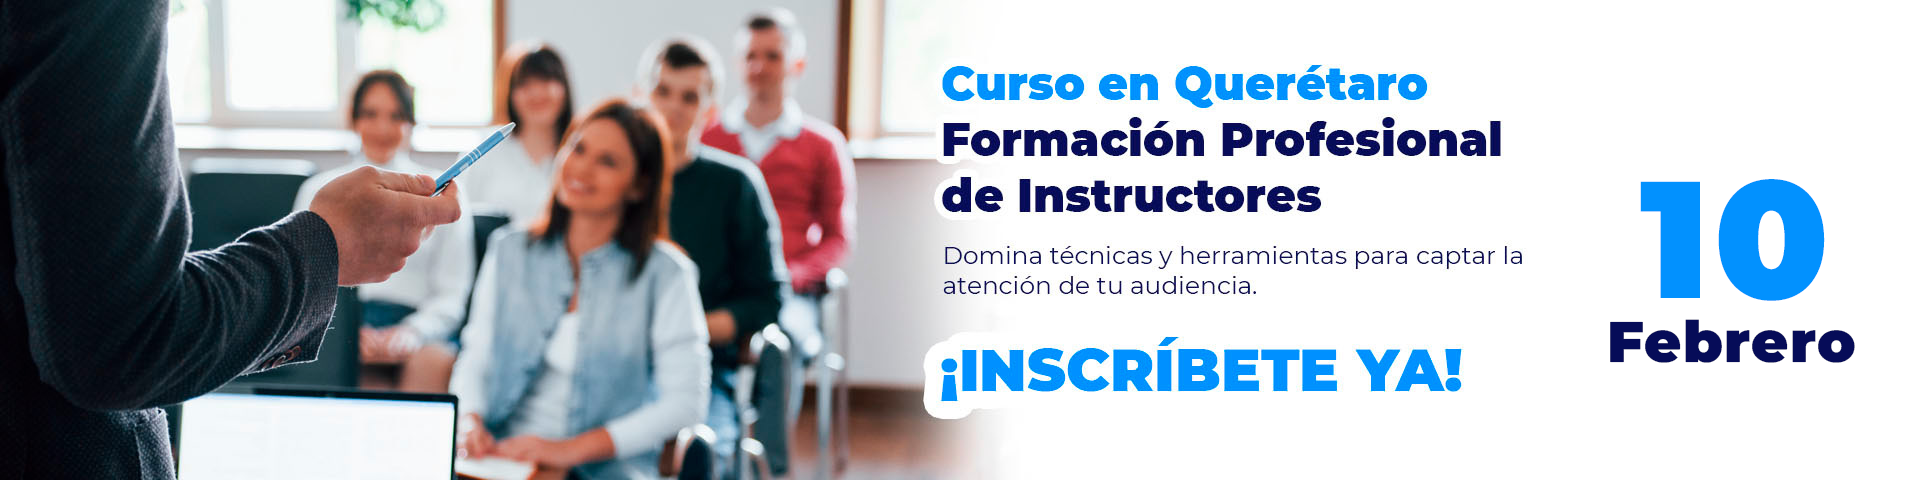 Curso de Instructores en Querétaro